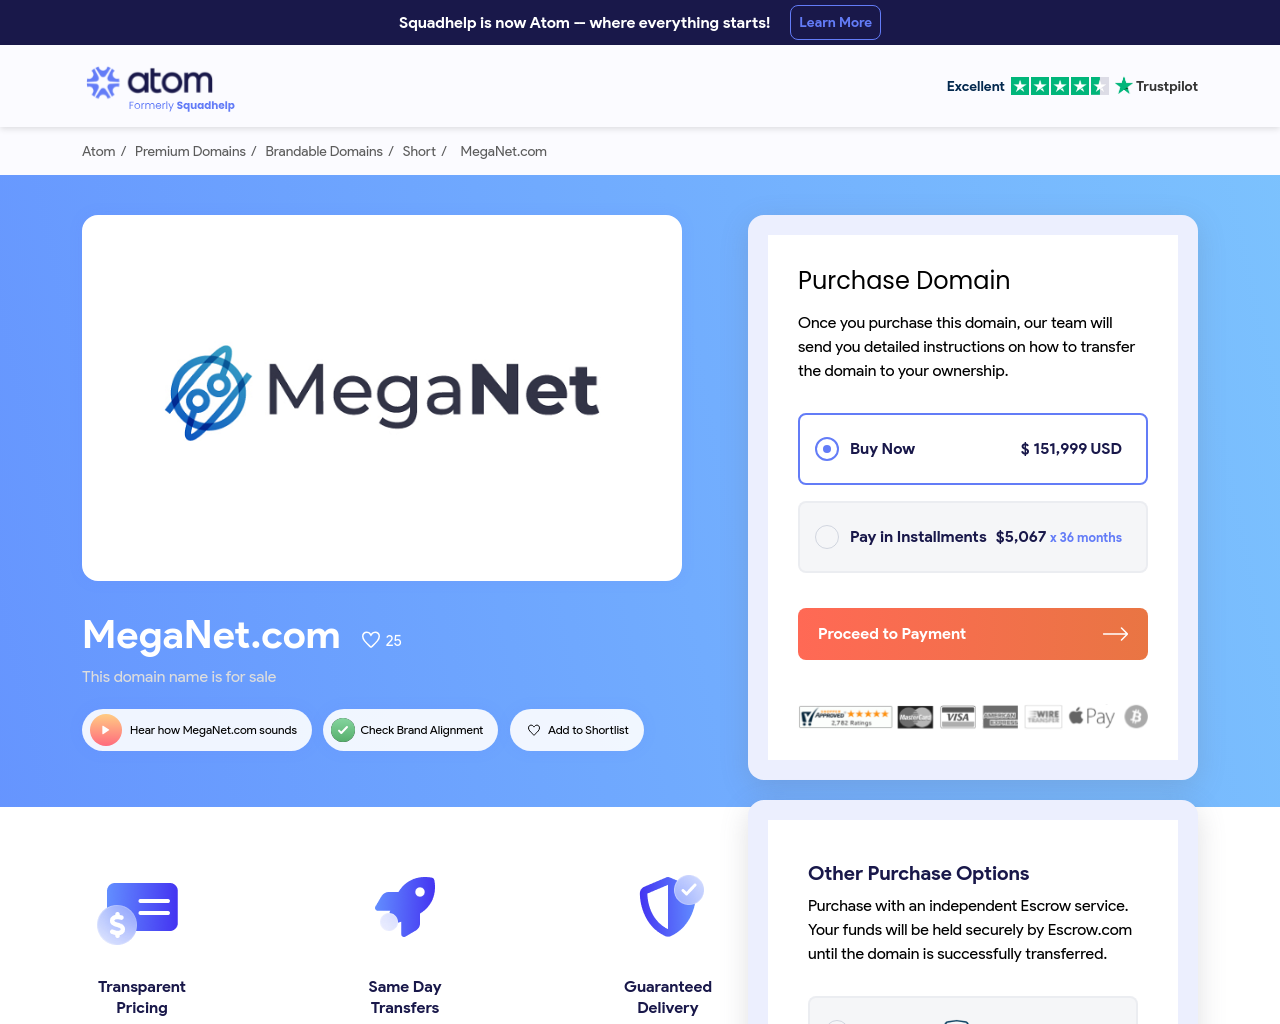 meganet.com